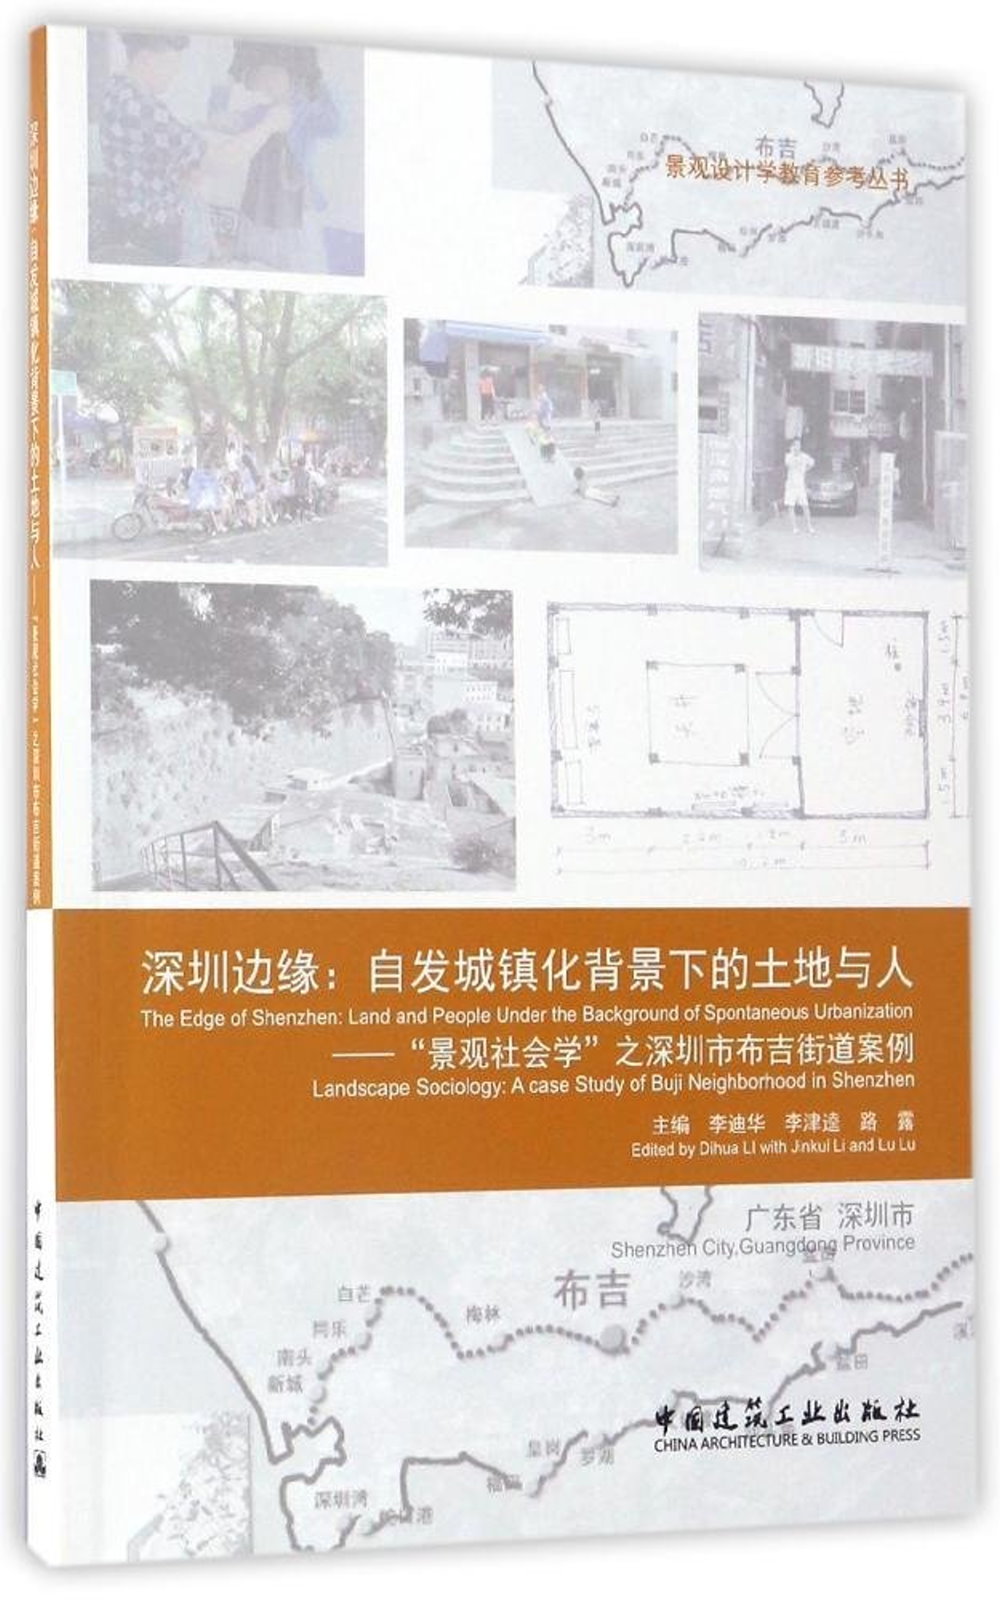 深圳邊緣：自發城鎮化背景下的土地與人--「景觀社會學」之深圳市布吉街道案例